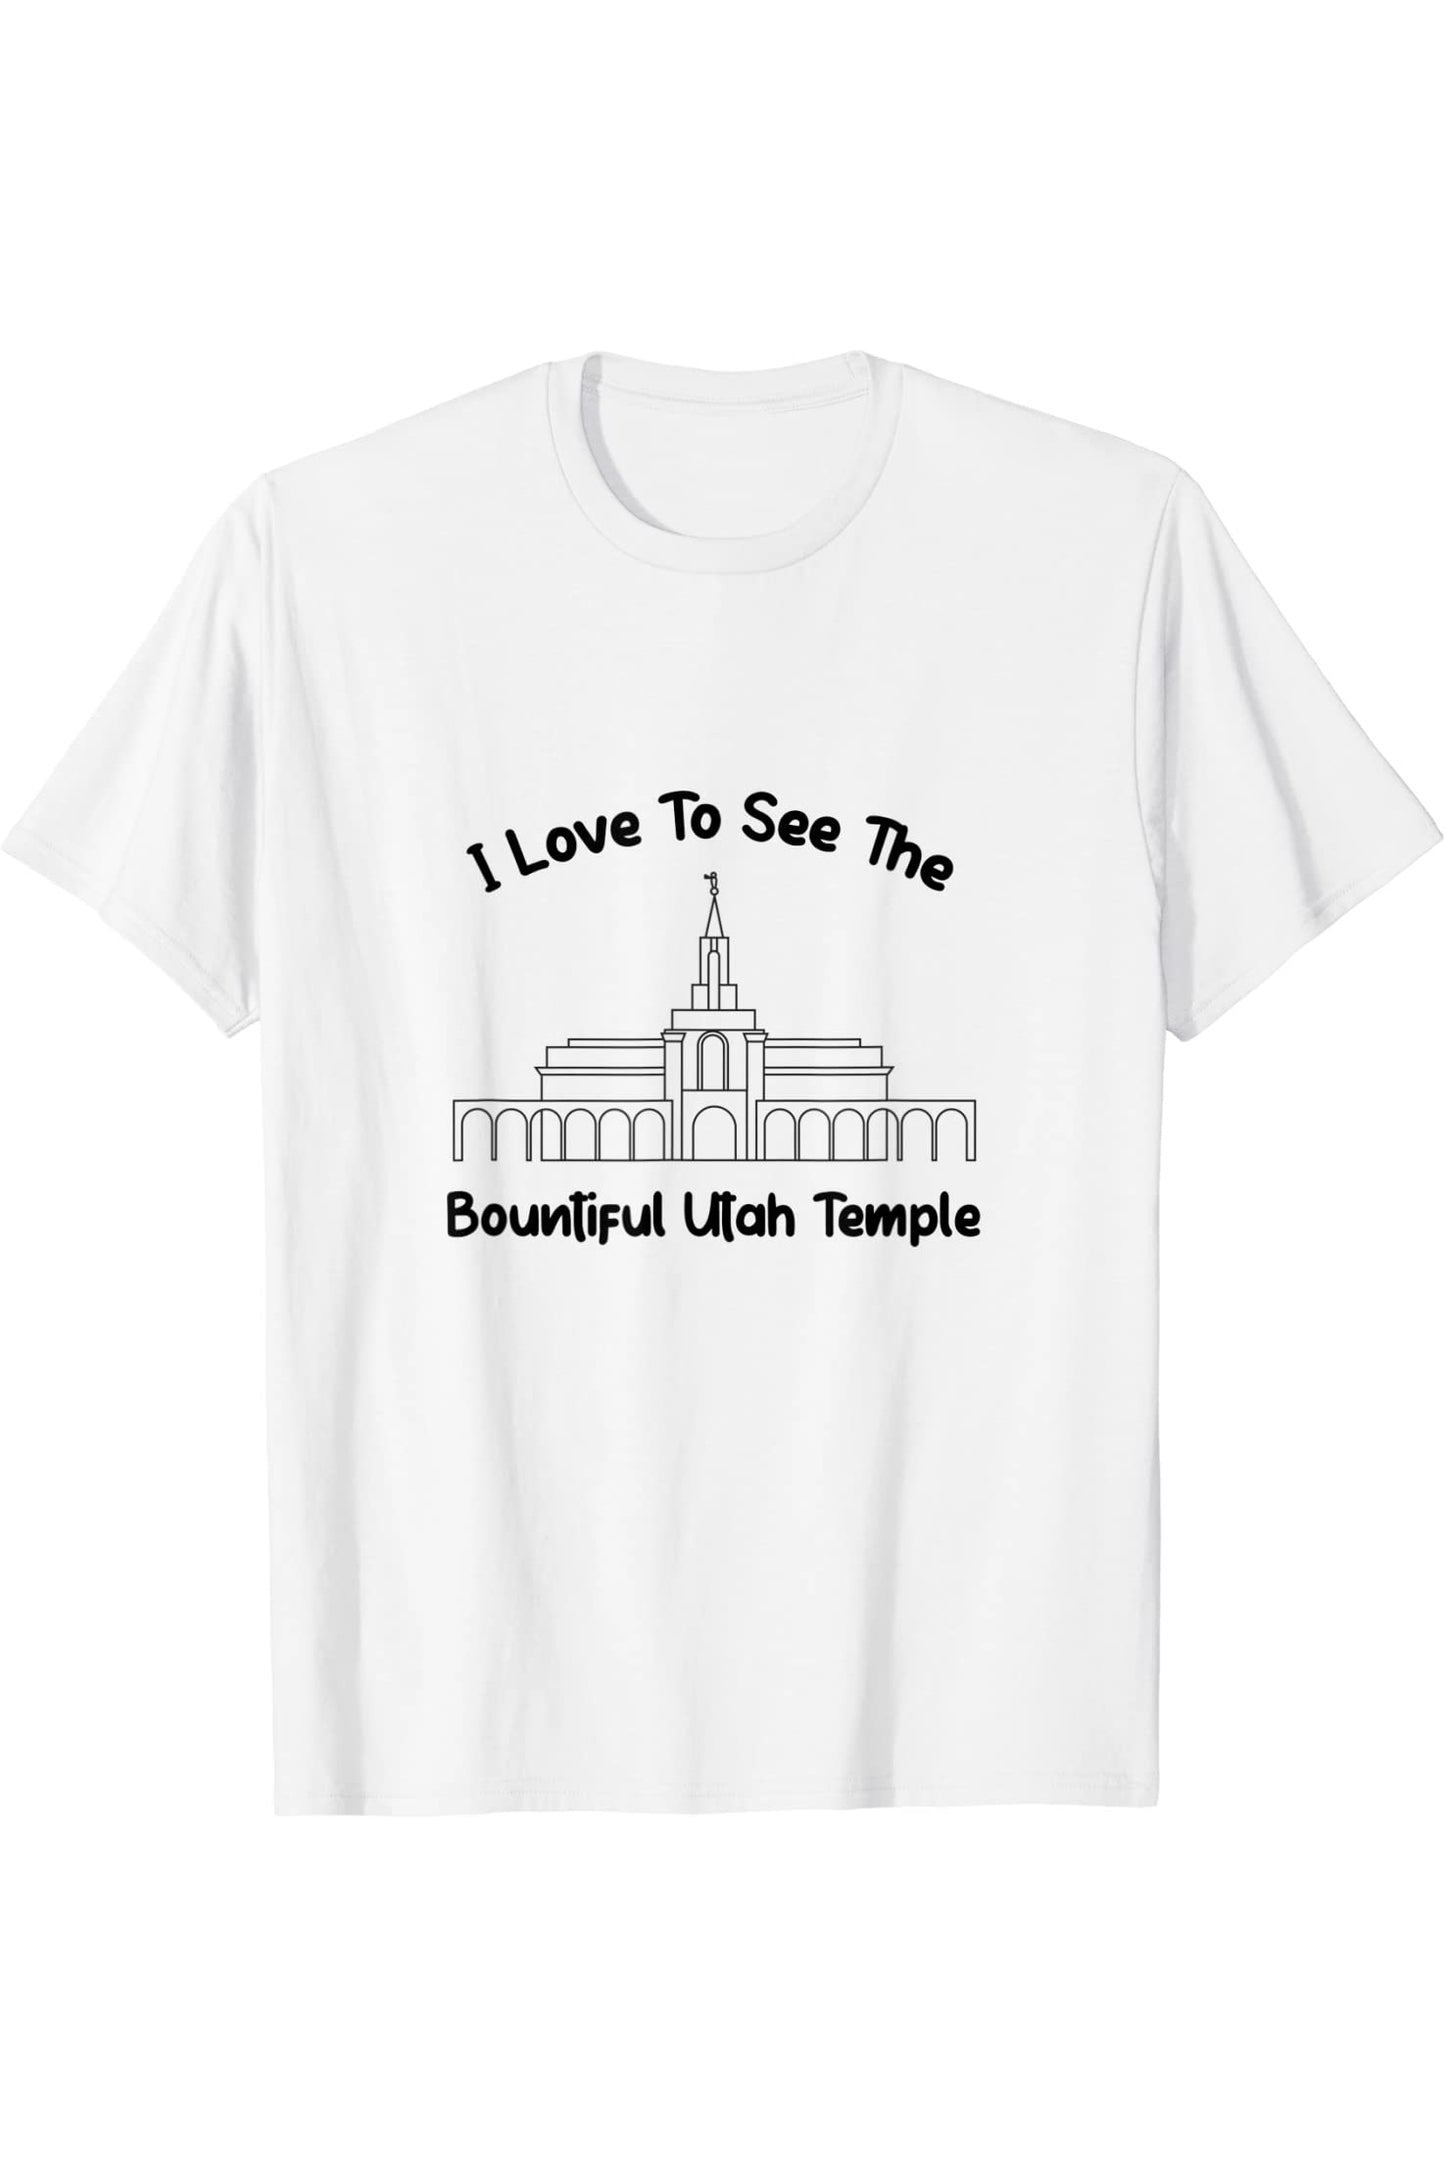 Tempio abbondante dello Utah, amo vedere il mio tempio, primario T-Shirt